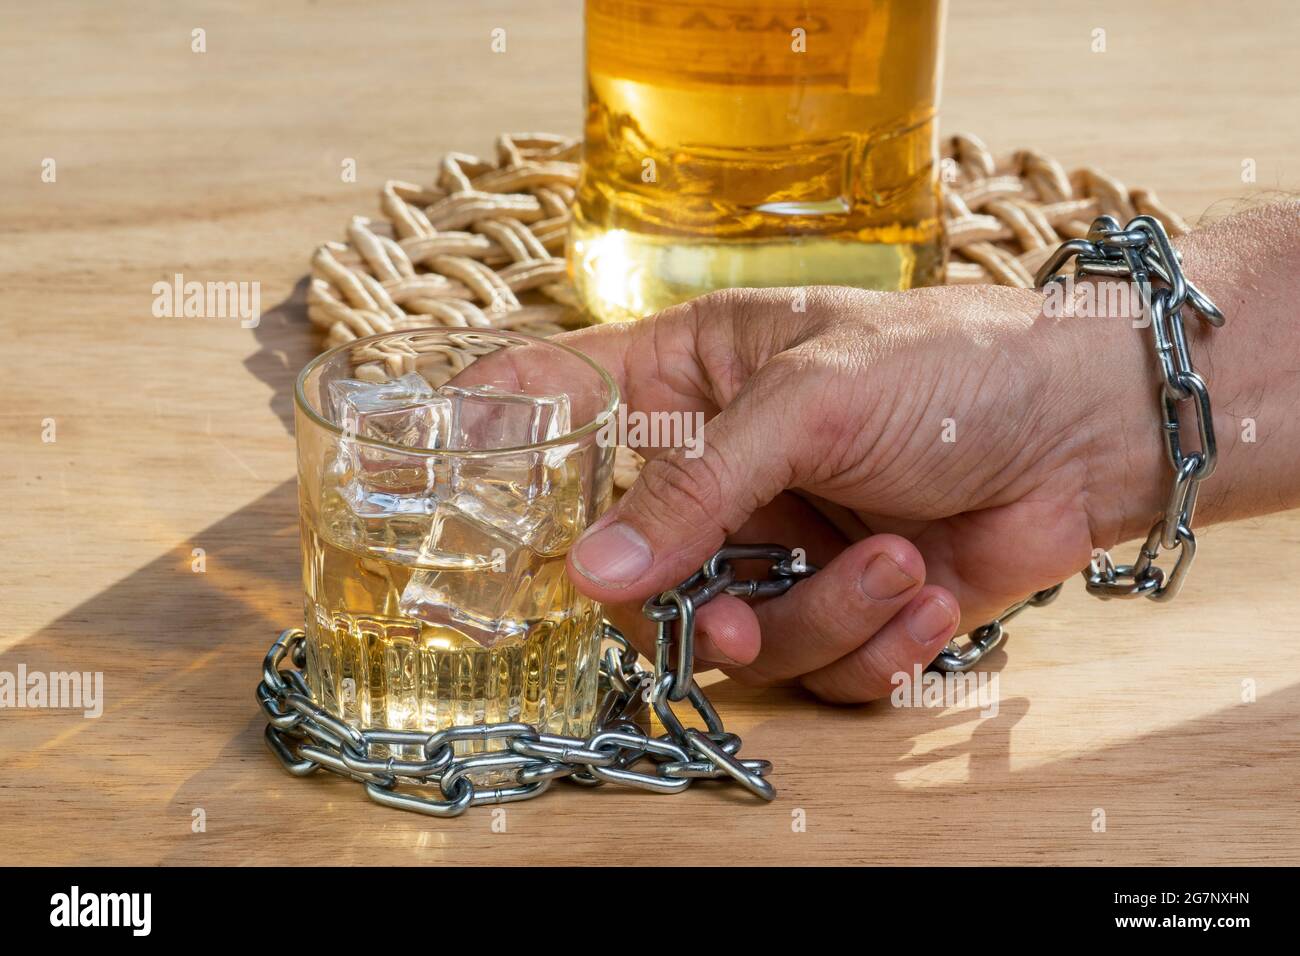 Verrouillage des mains chaîne un verre de whisky pour arrêter de boire.  Concept d'alcoolisme. Arrêtez la consommation d'alcool Photo Stock - Alamy